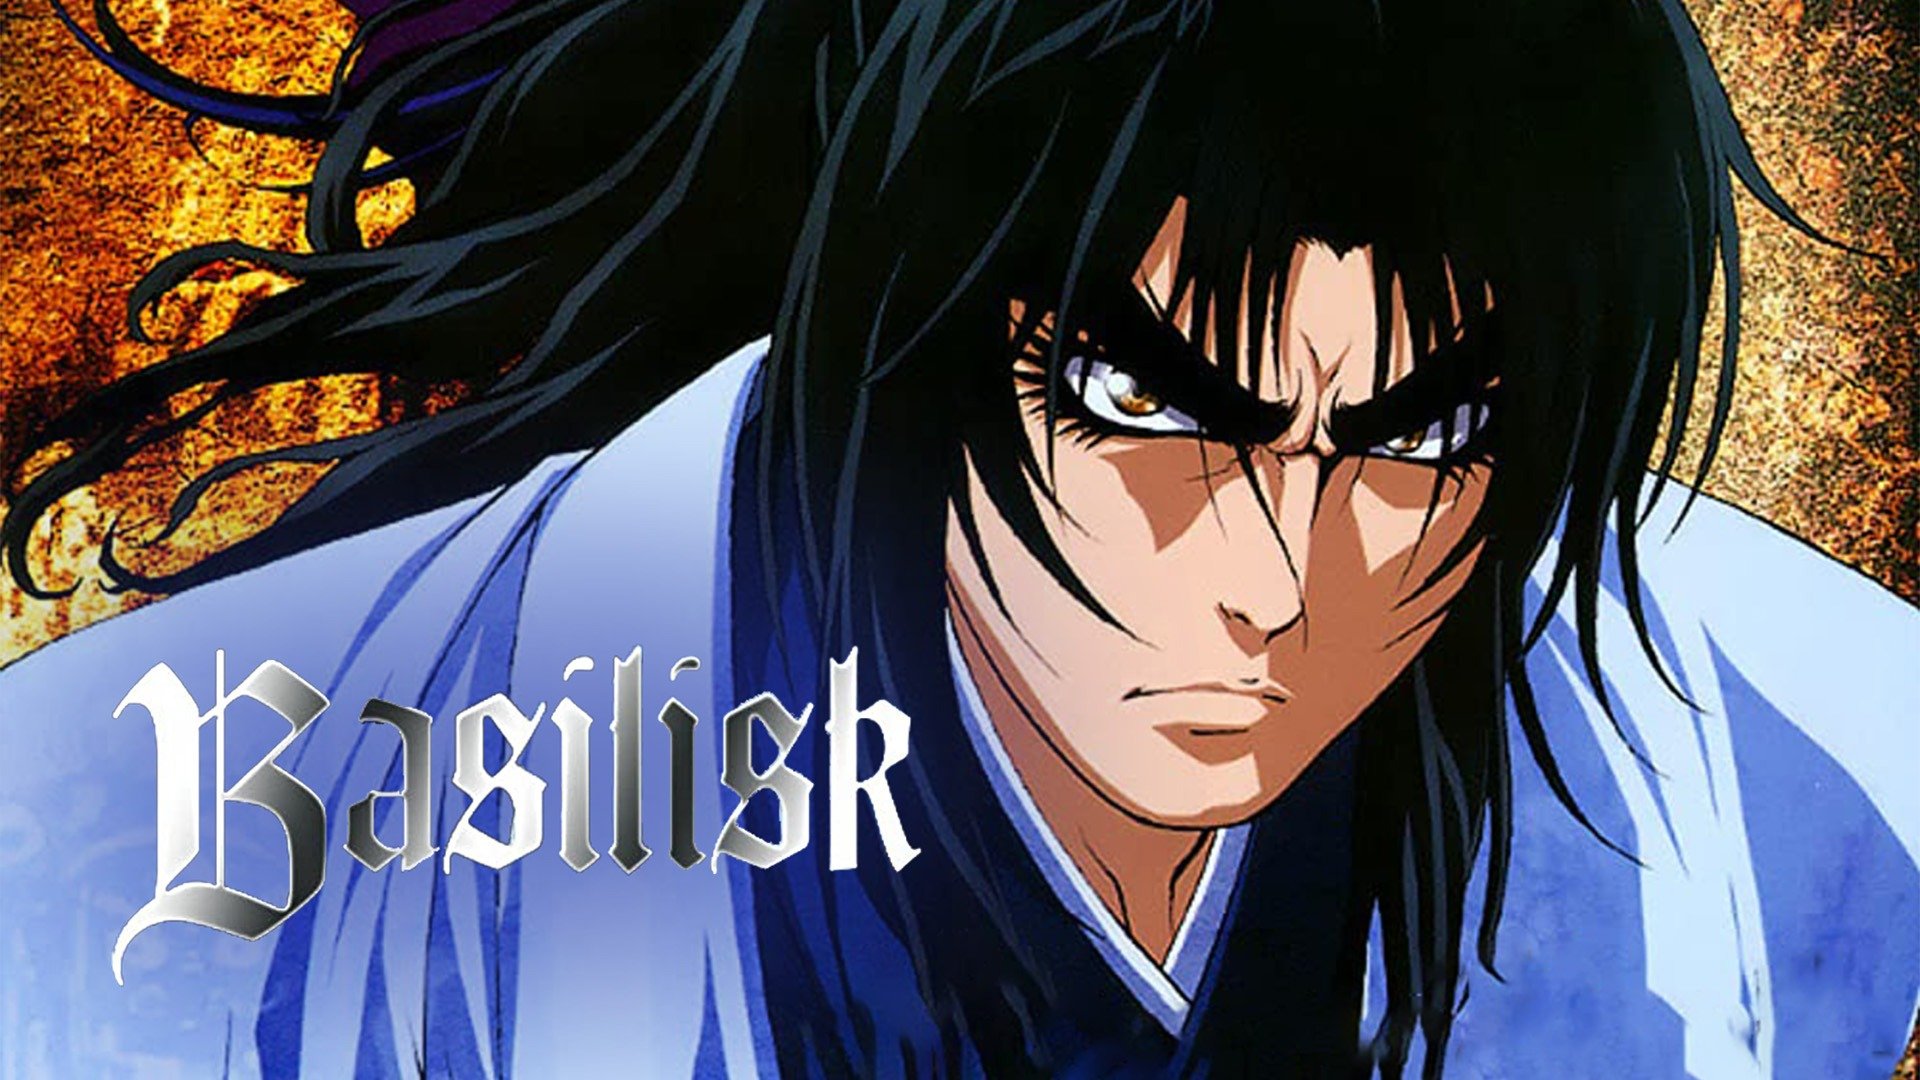 HD wallpaper Gennosuke Kouga  Basilisk blue and black anime samurai  character  Wallpaper Flare